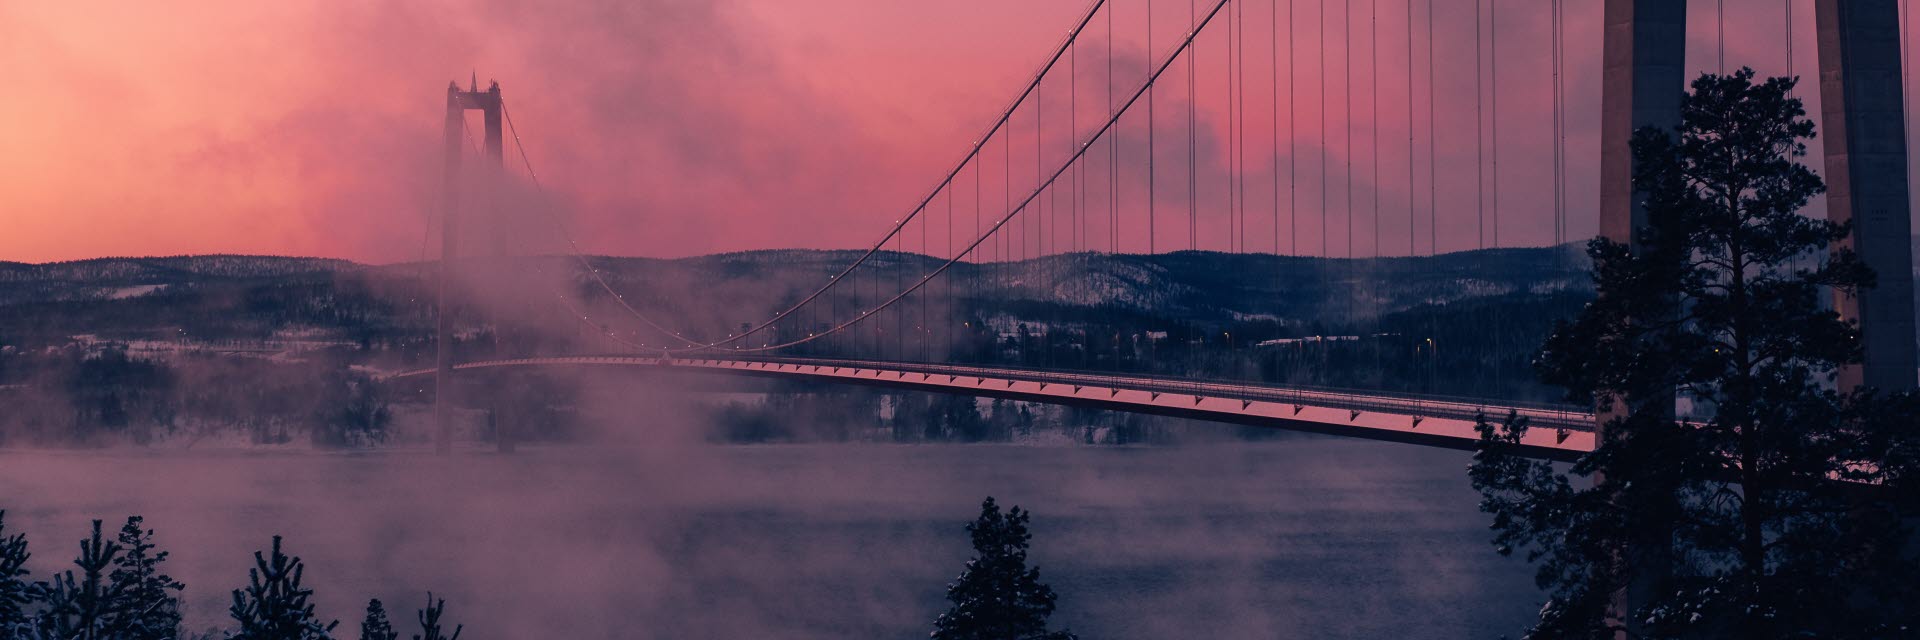 Höga kusten bro en vinterkväll med rök i luften